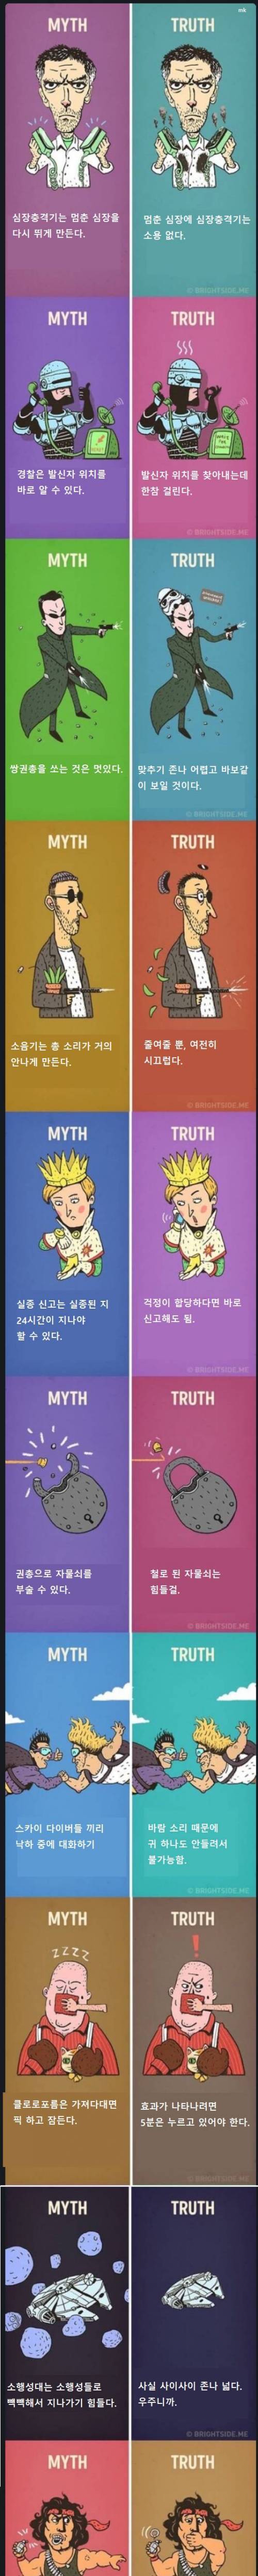 [스압] MYTH vs TRUTH..jpg